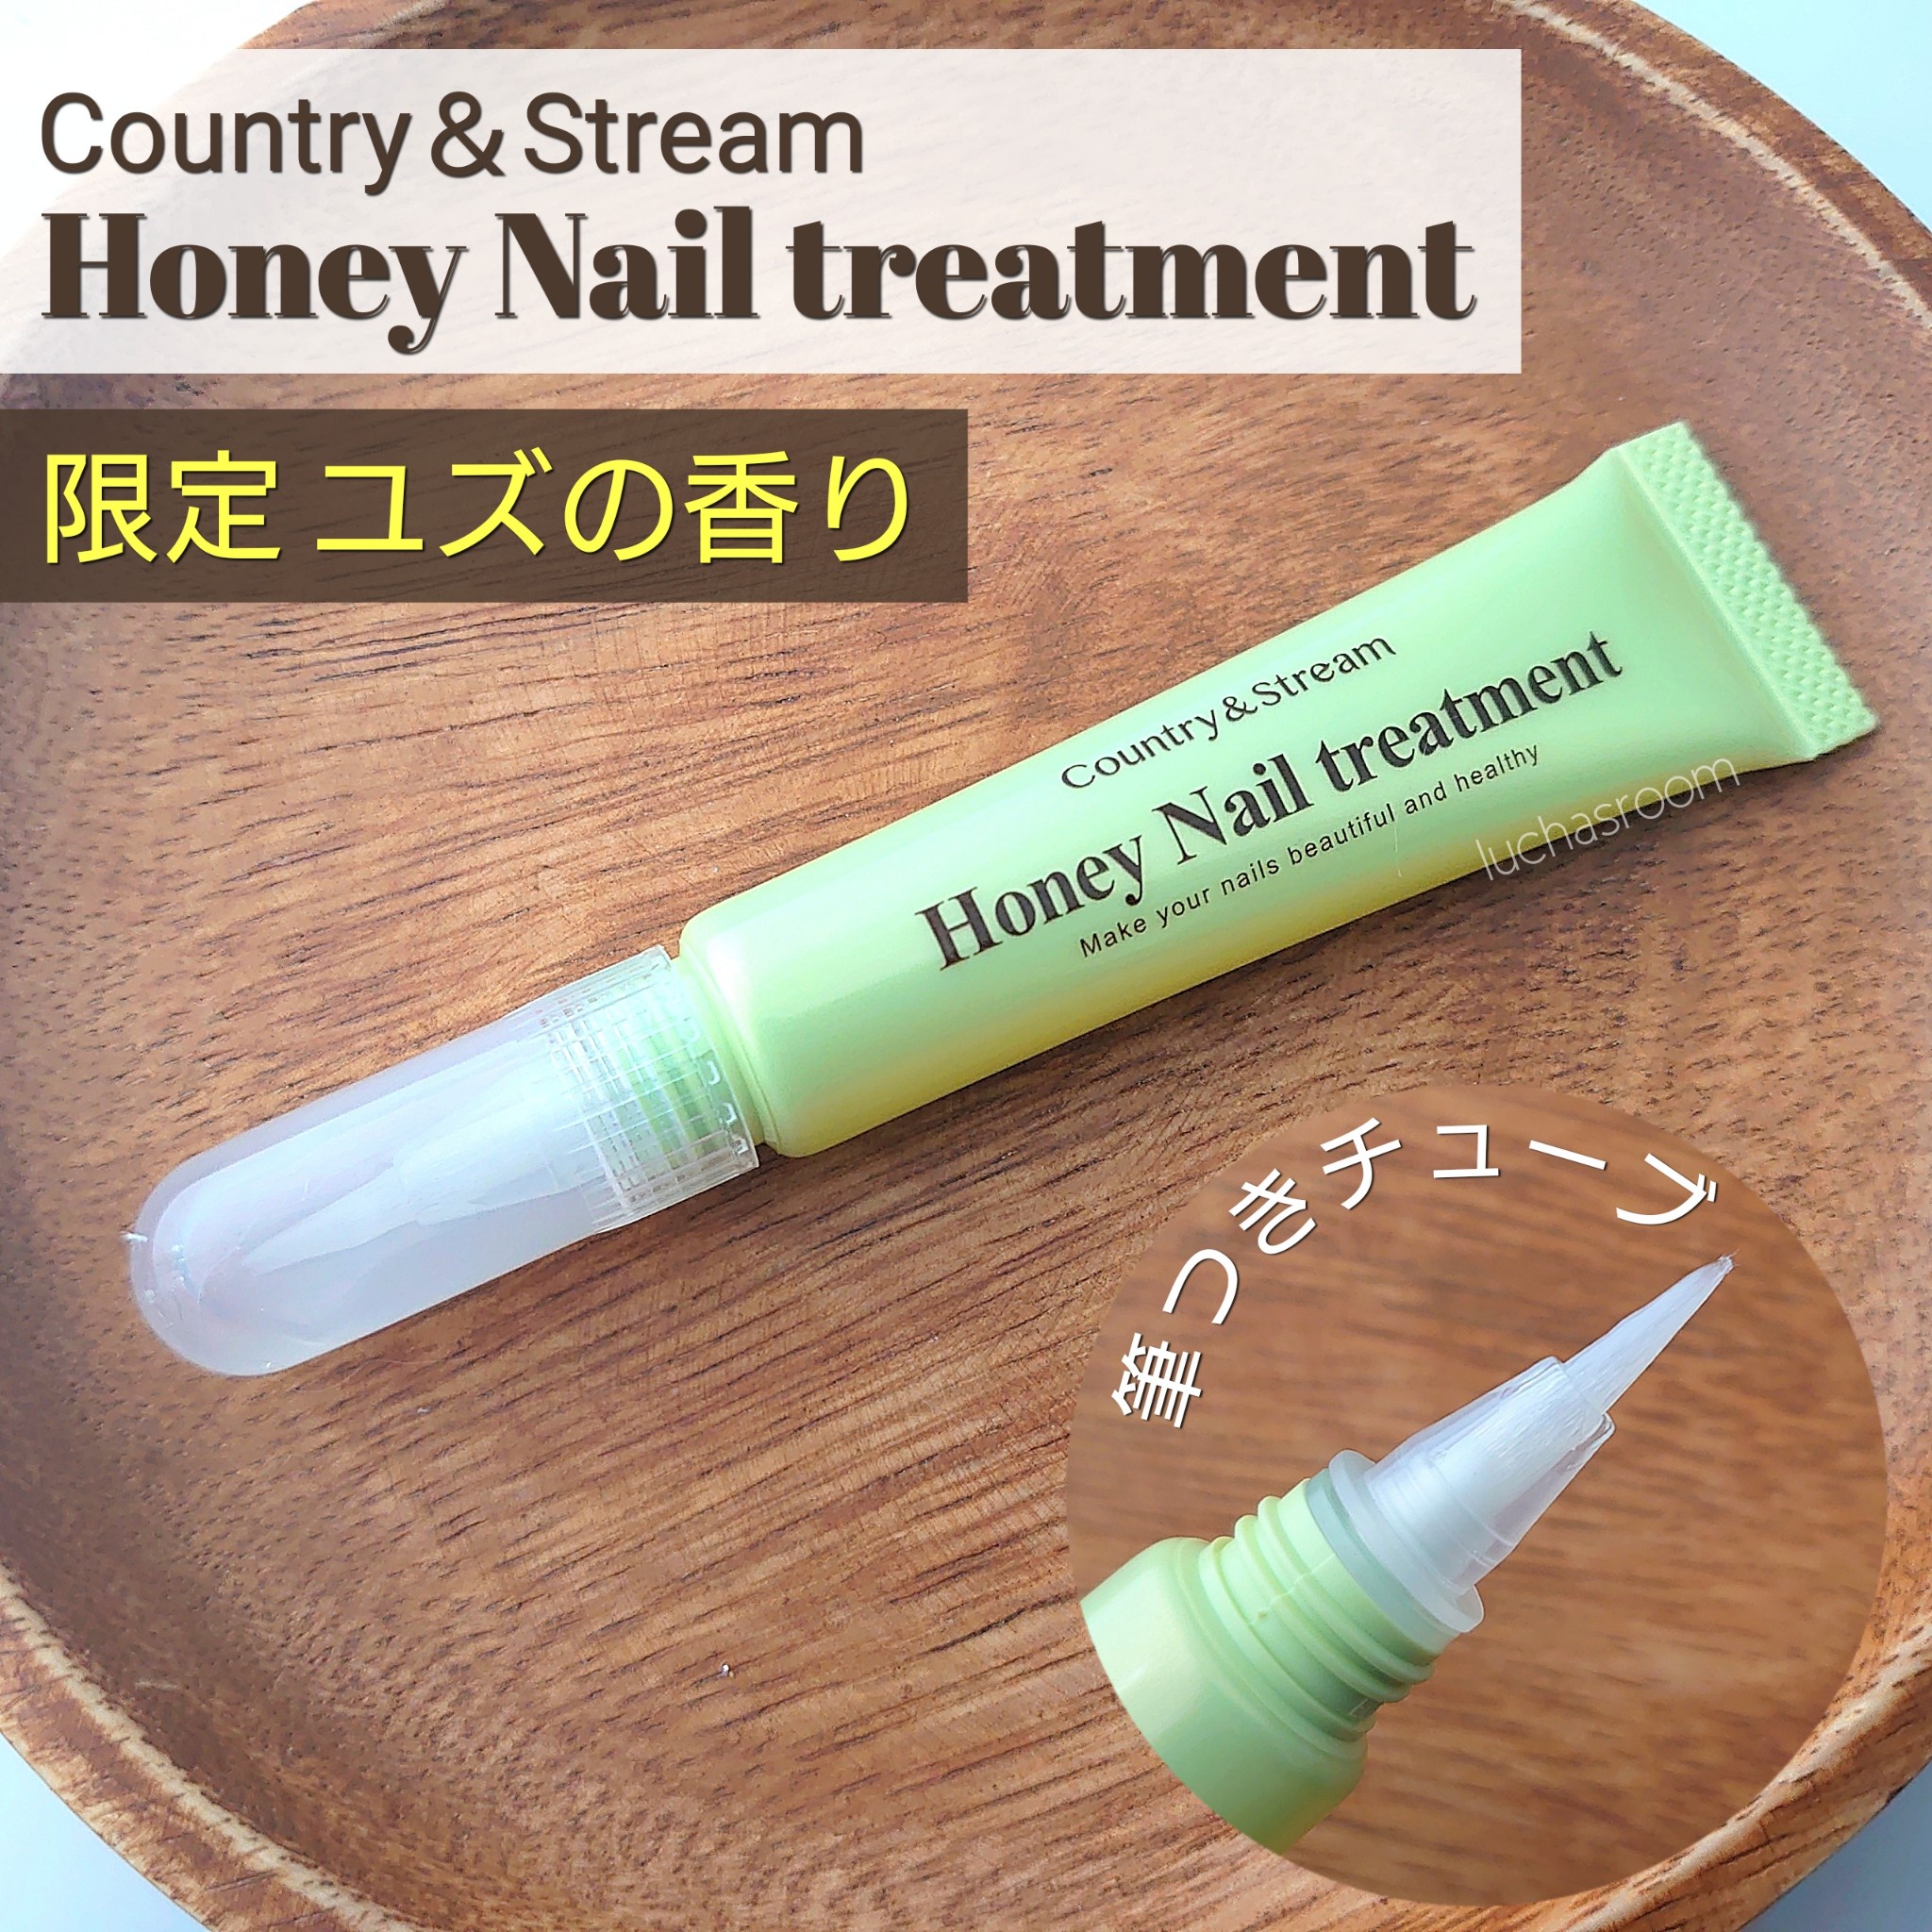 信憑 honey nail treatment ネイルトリートメントオイル